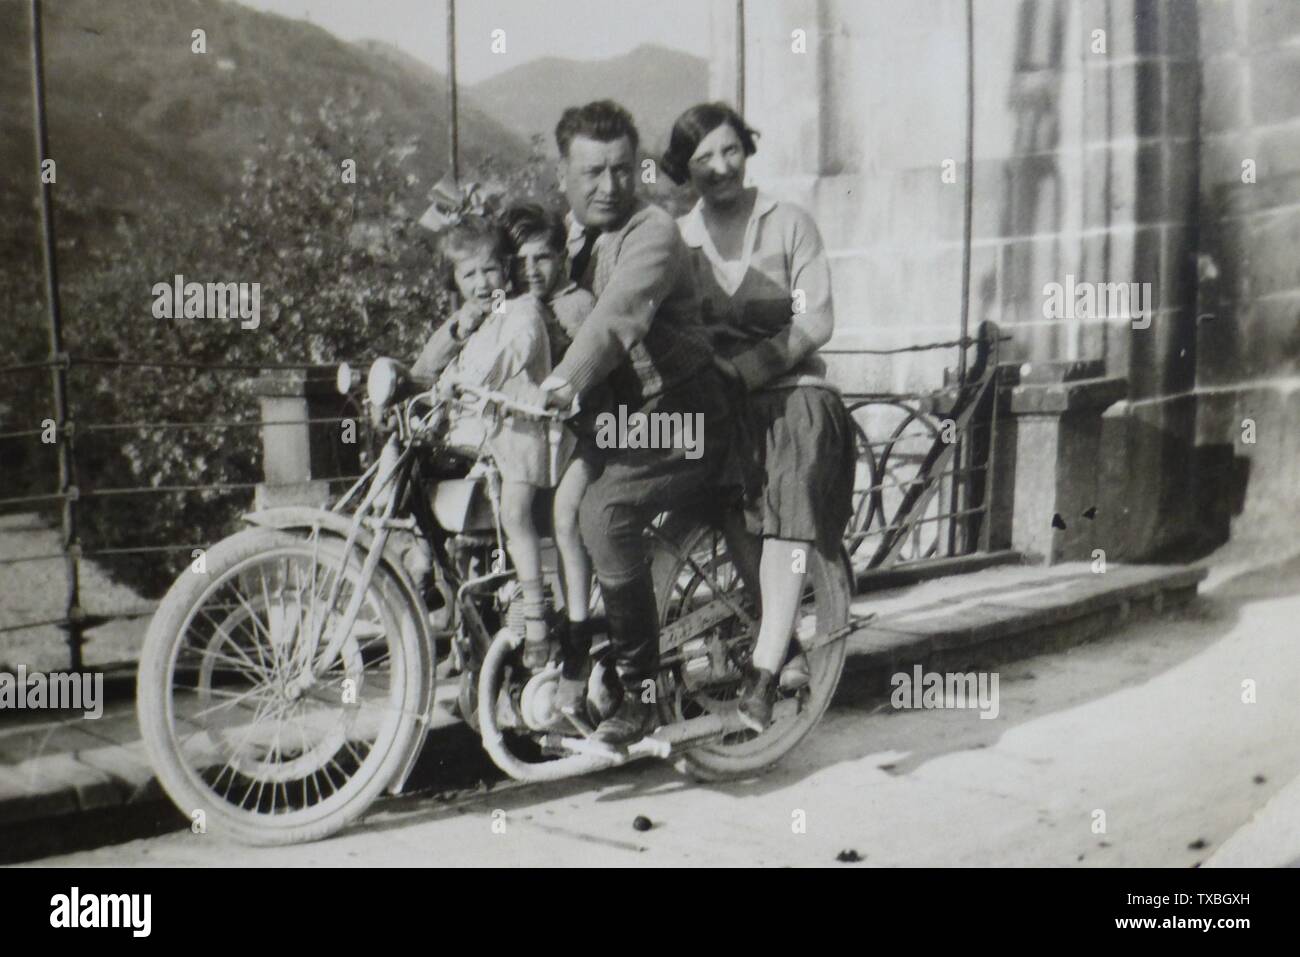 Fotografía del álbum Bagni Di Lucca, Italia; fecha del siglo XX QS:P,+1950-00-00T00:00:00Z/7; exposición de fotografía Bagni di Lucca; Desconocido; Foto de stock